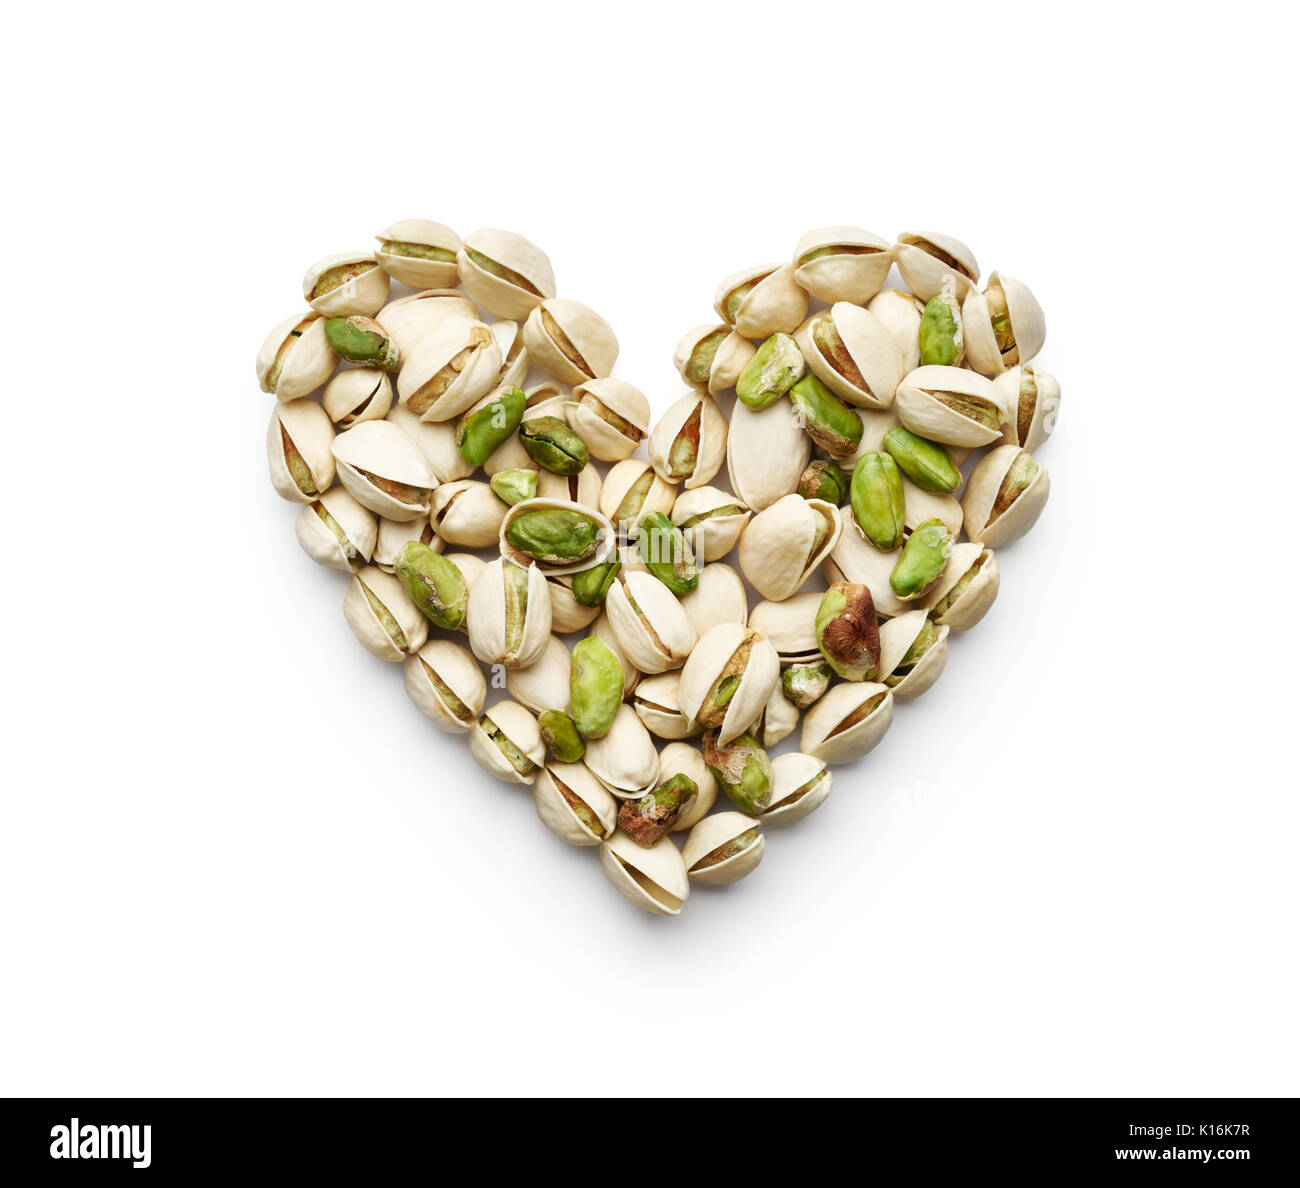 Les pistaches formant une forme de cœur isolated on white Banque D'Images